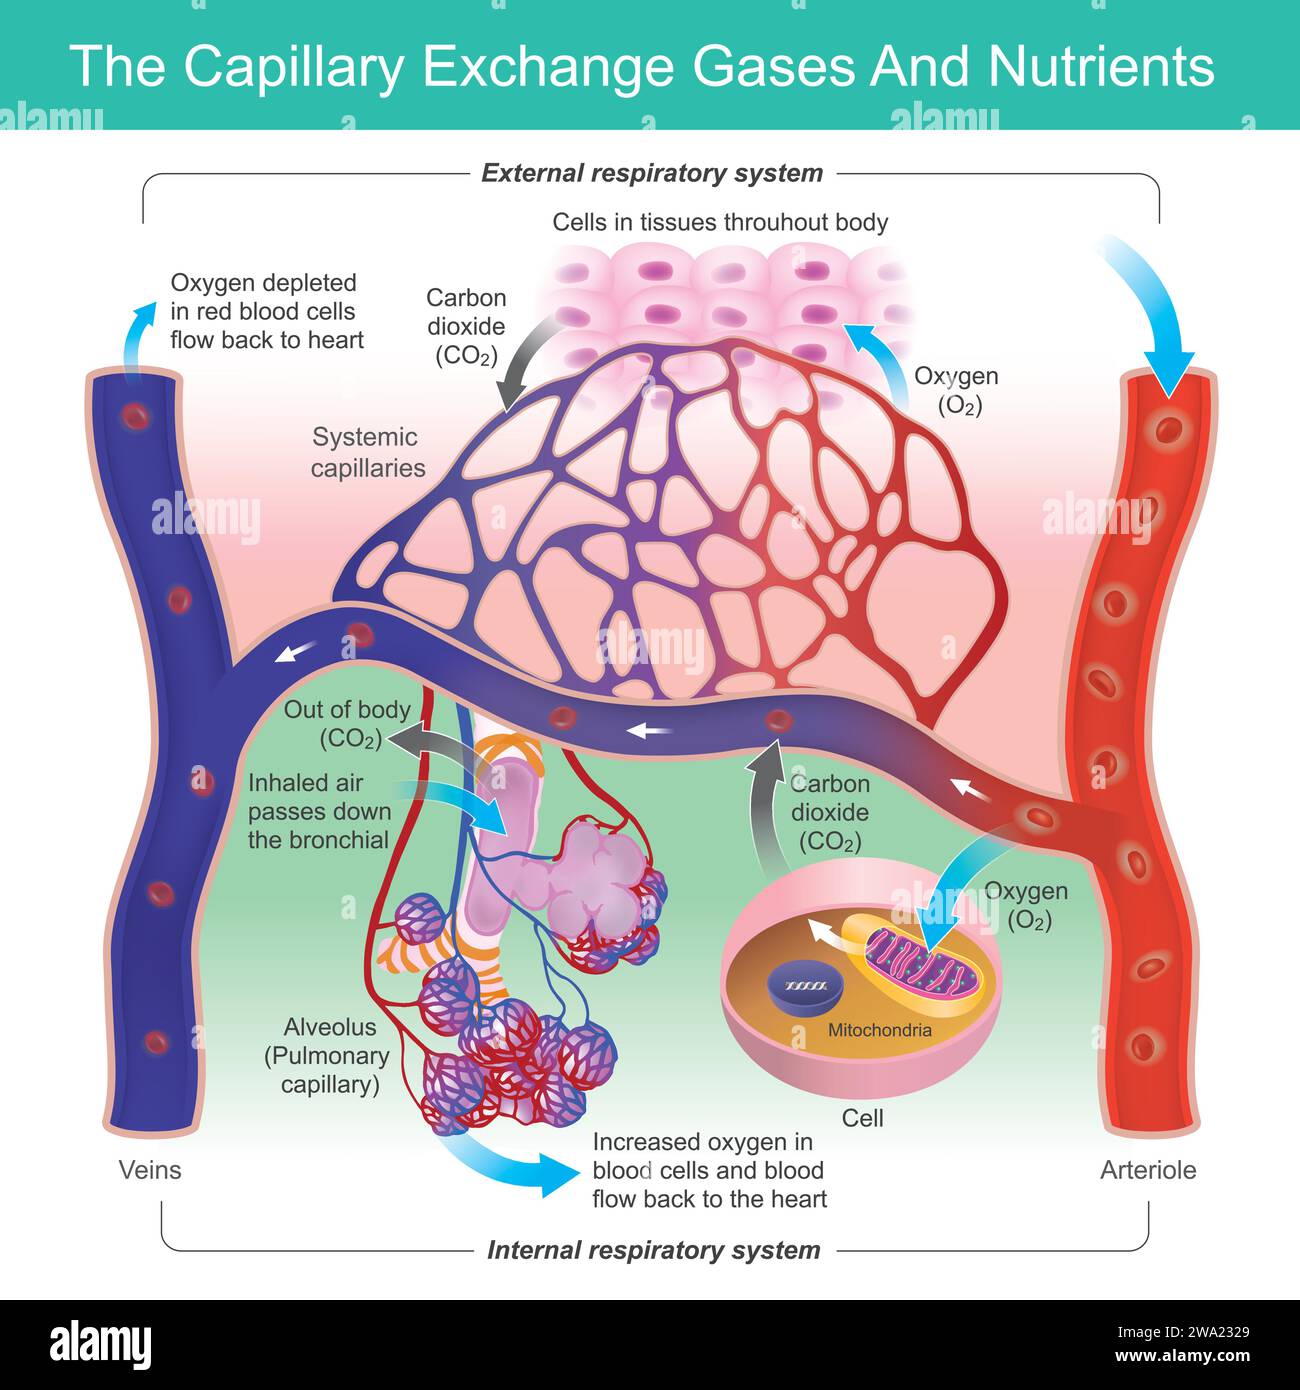 Gas di scambio capillare e nutrienti. Funzione capillare in scambio di ossigeno e anidride carbonica nei globuli rossi. Illustrazione Vettoriale